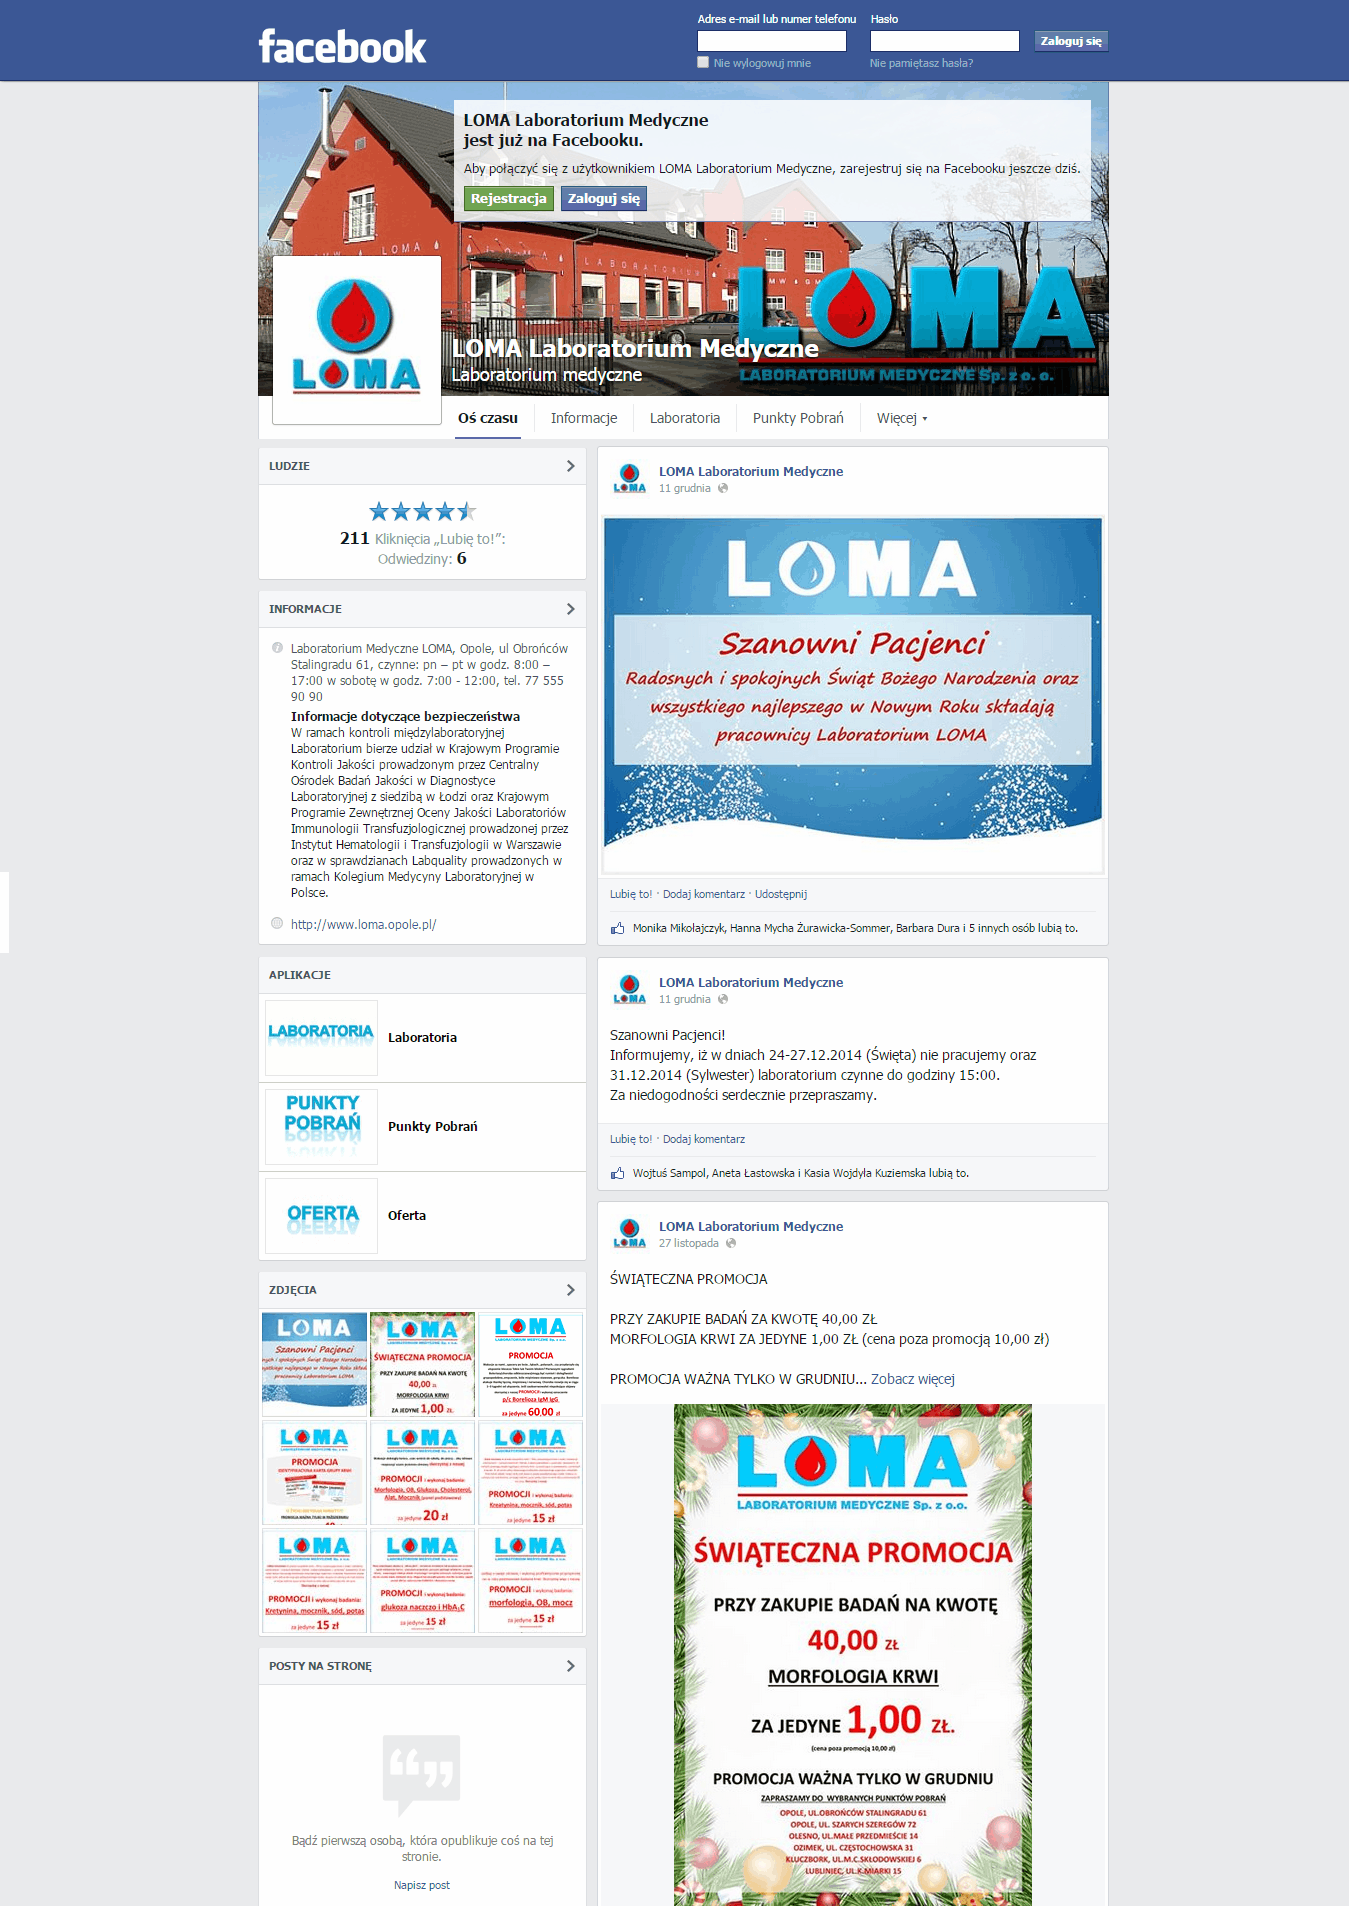 Strona główna fanpage Loma